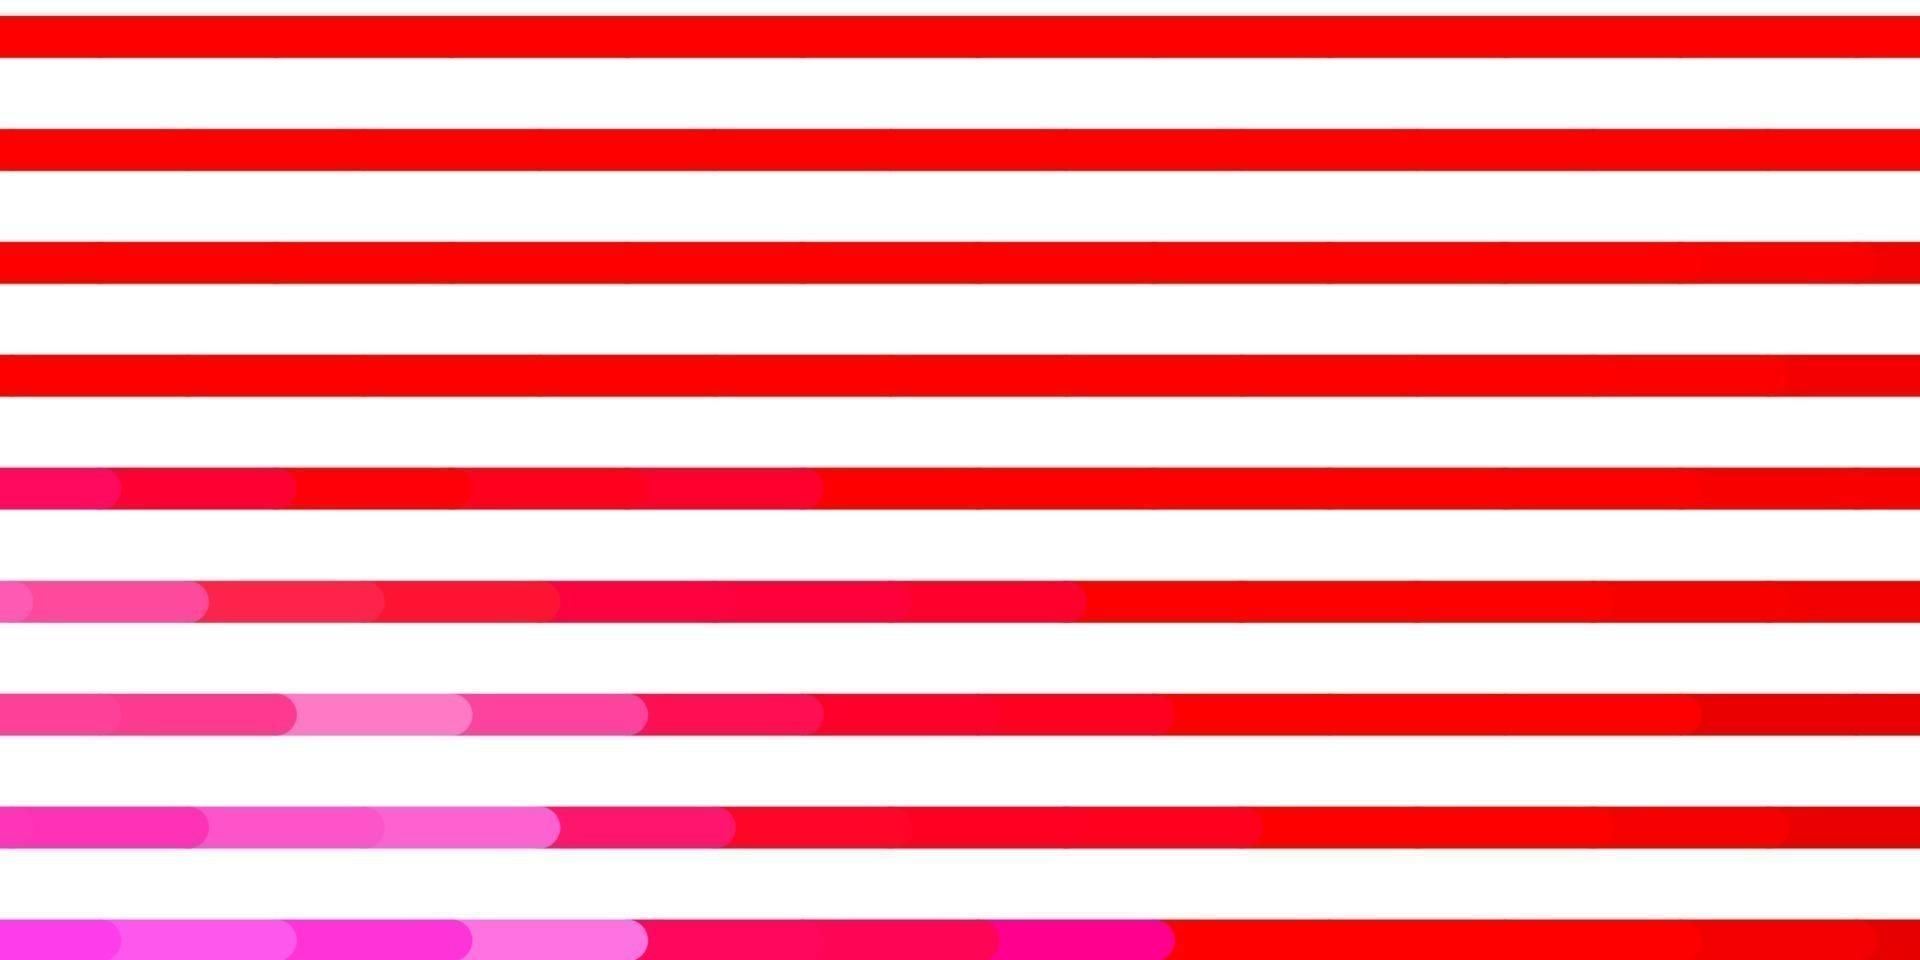 textura de vector rosa claro, amarillo con líneas.